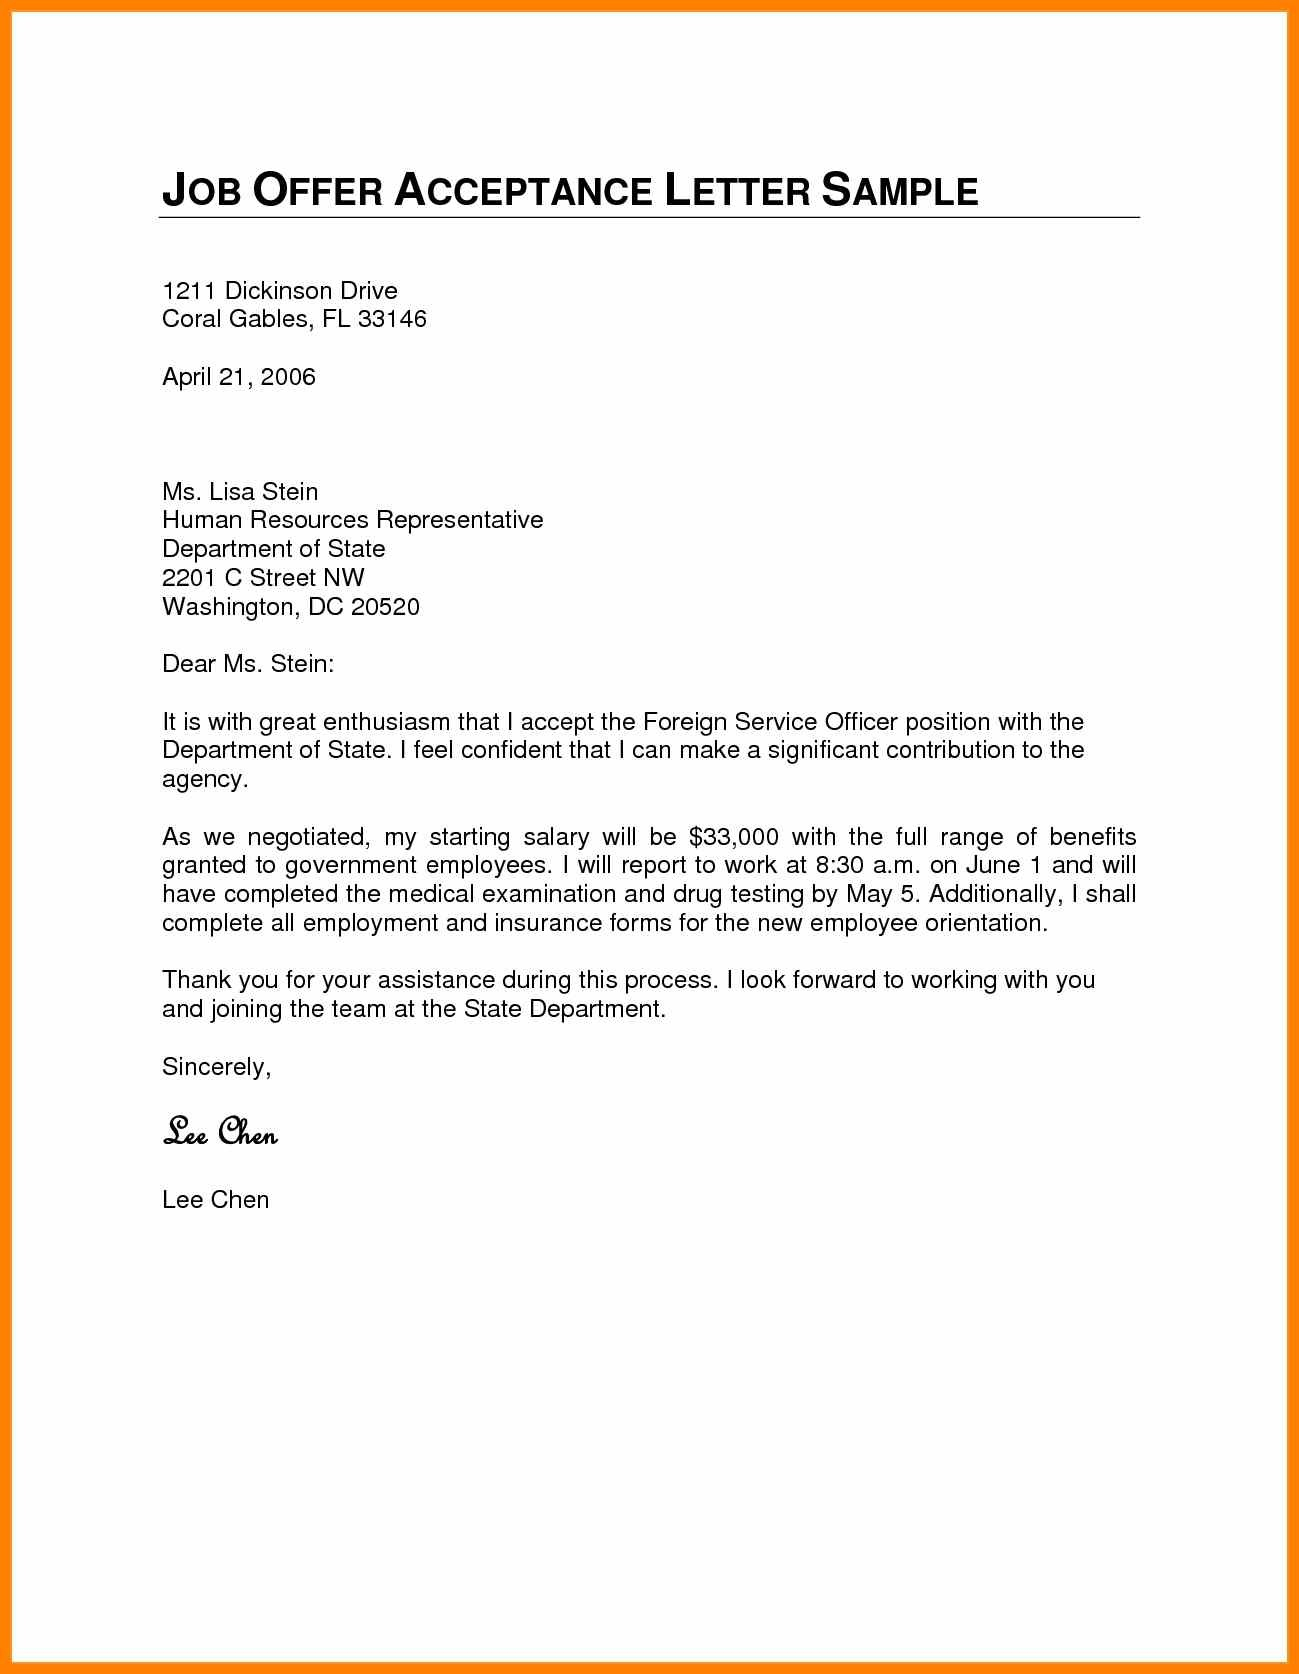 Job Offer Acceptance Letter Template - formal Acceptance Letter for Job Fer New 8 Acceptance Letter